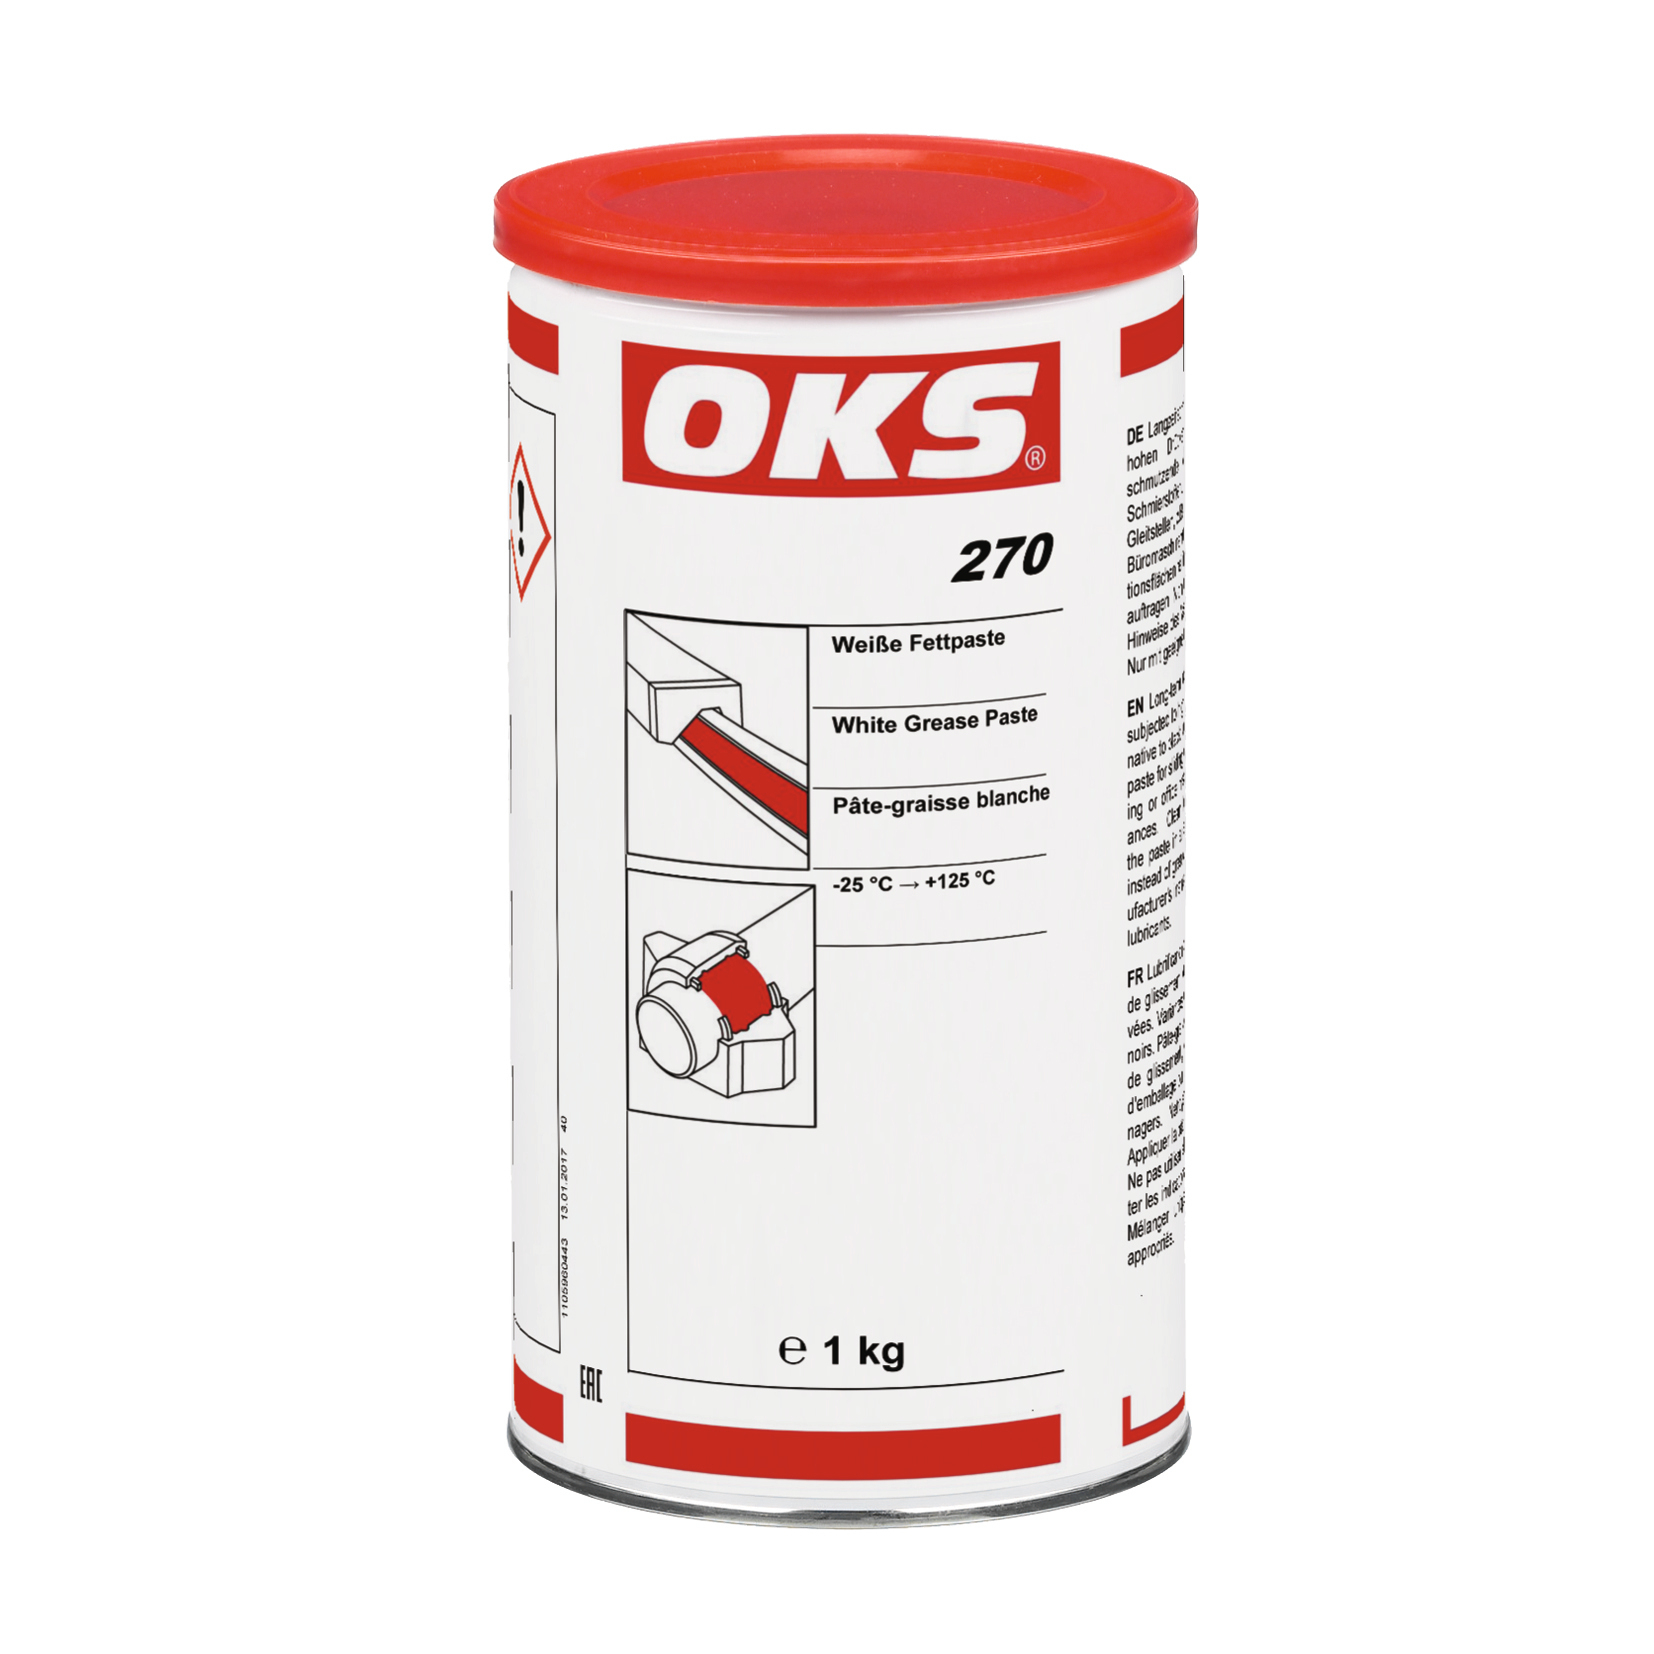 OKS0270-1 OKS 270 is een vetpasta voor smering van voor vuil gevoelige glijvlakken in mechanieken.